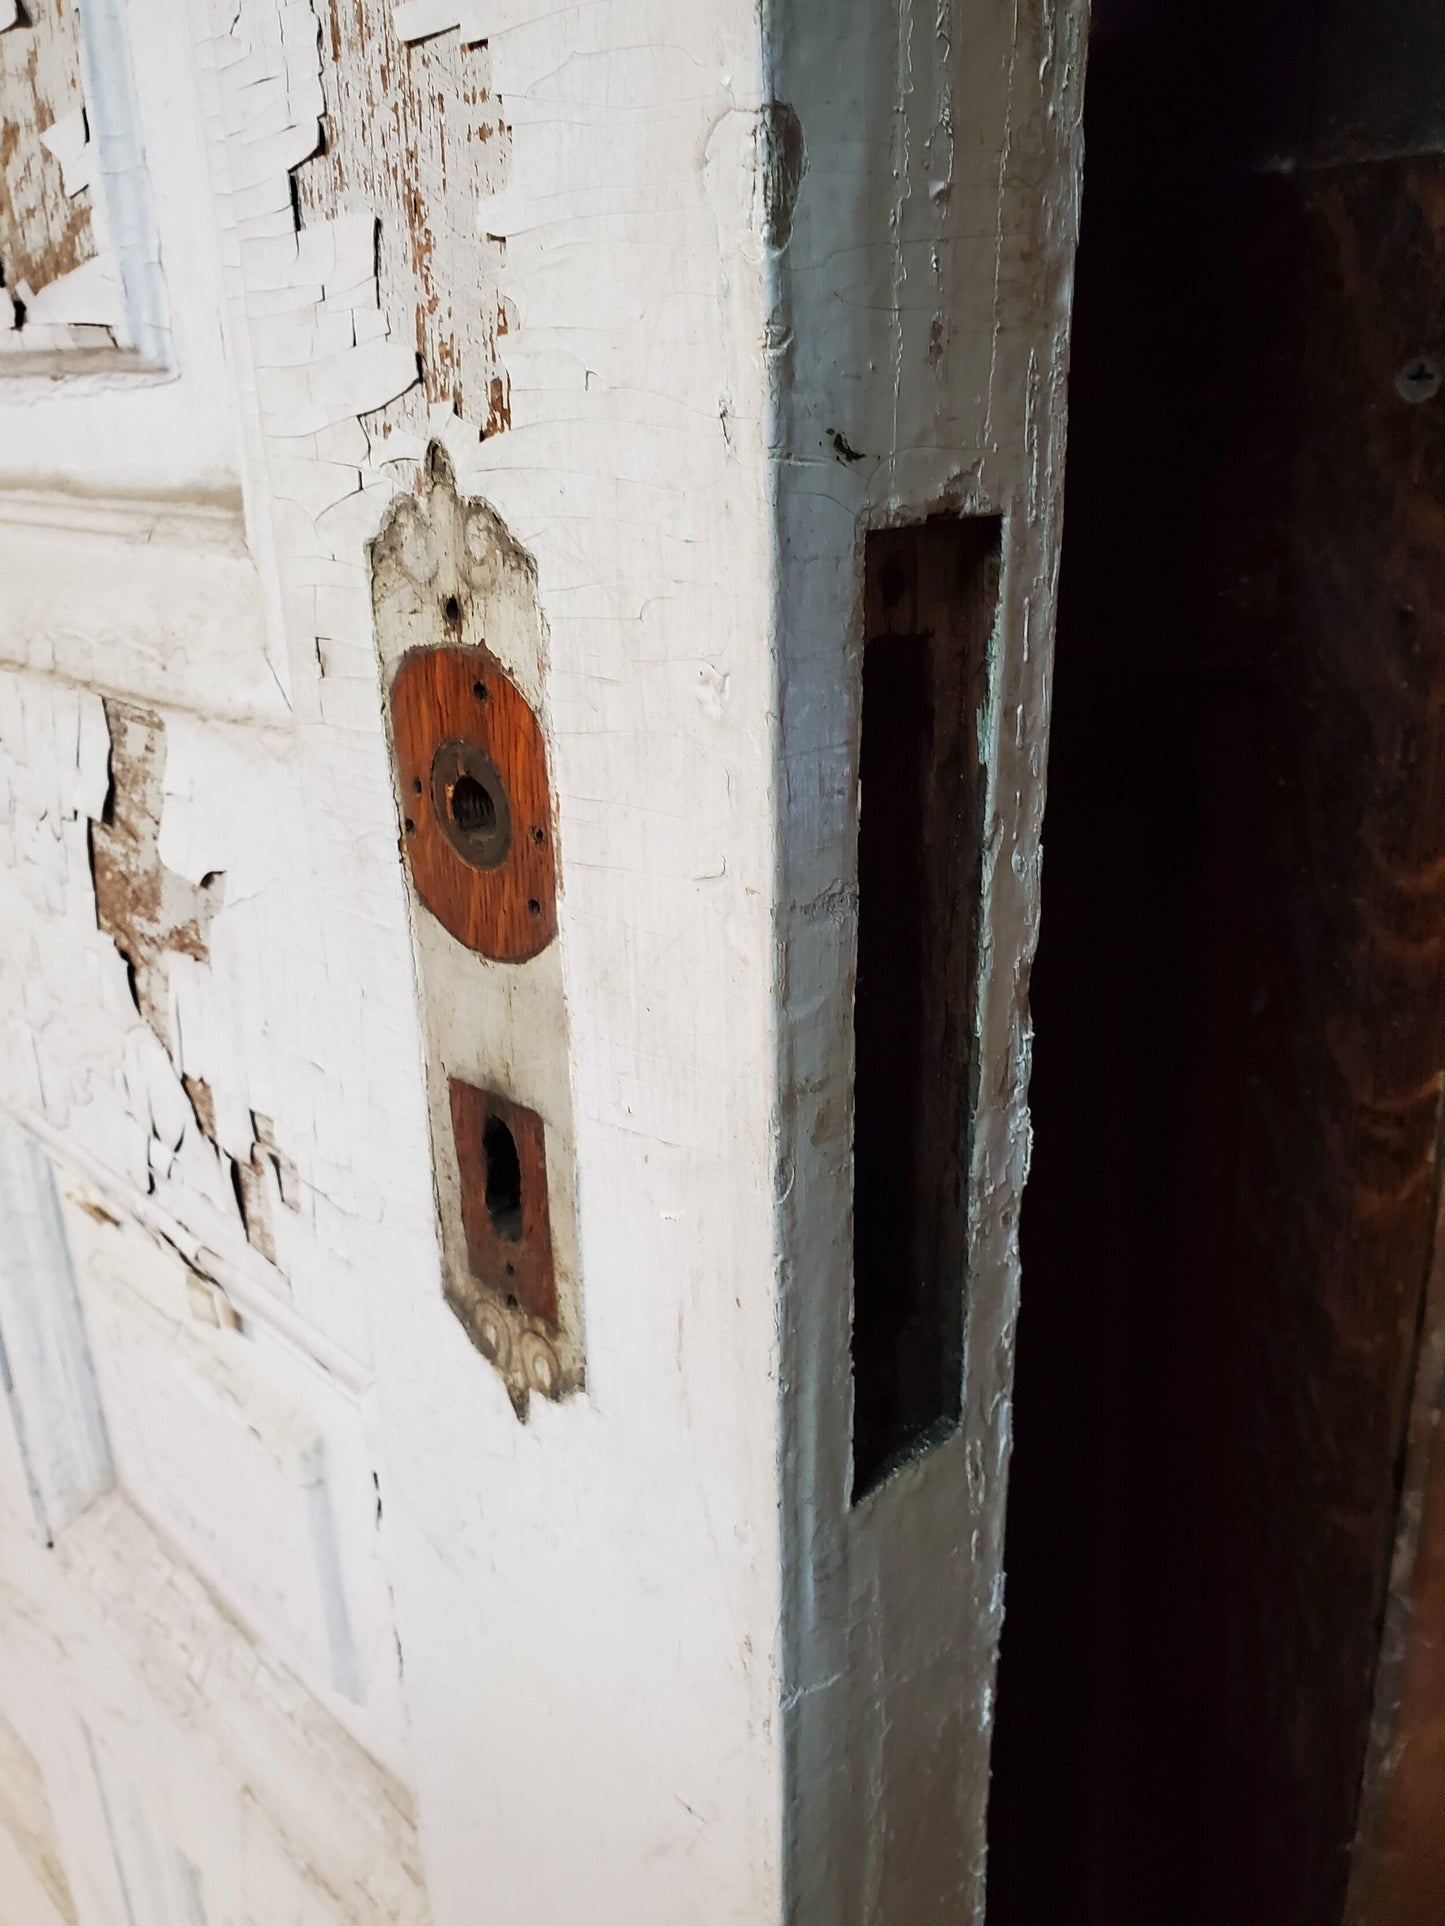 36" Antique Interior Door, White Raised Panel Solid Wood Door